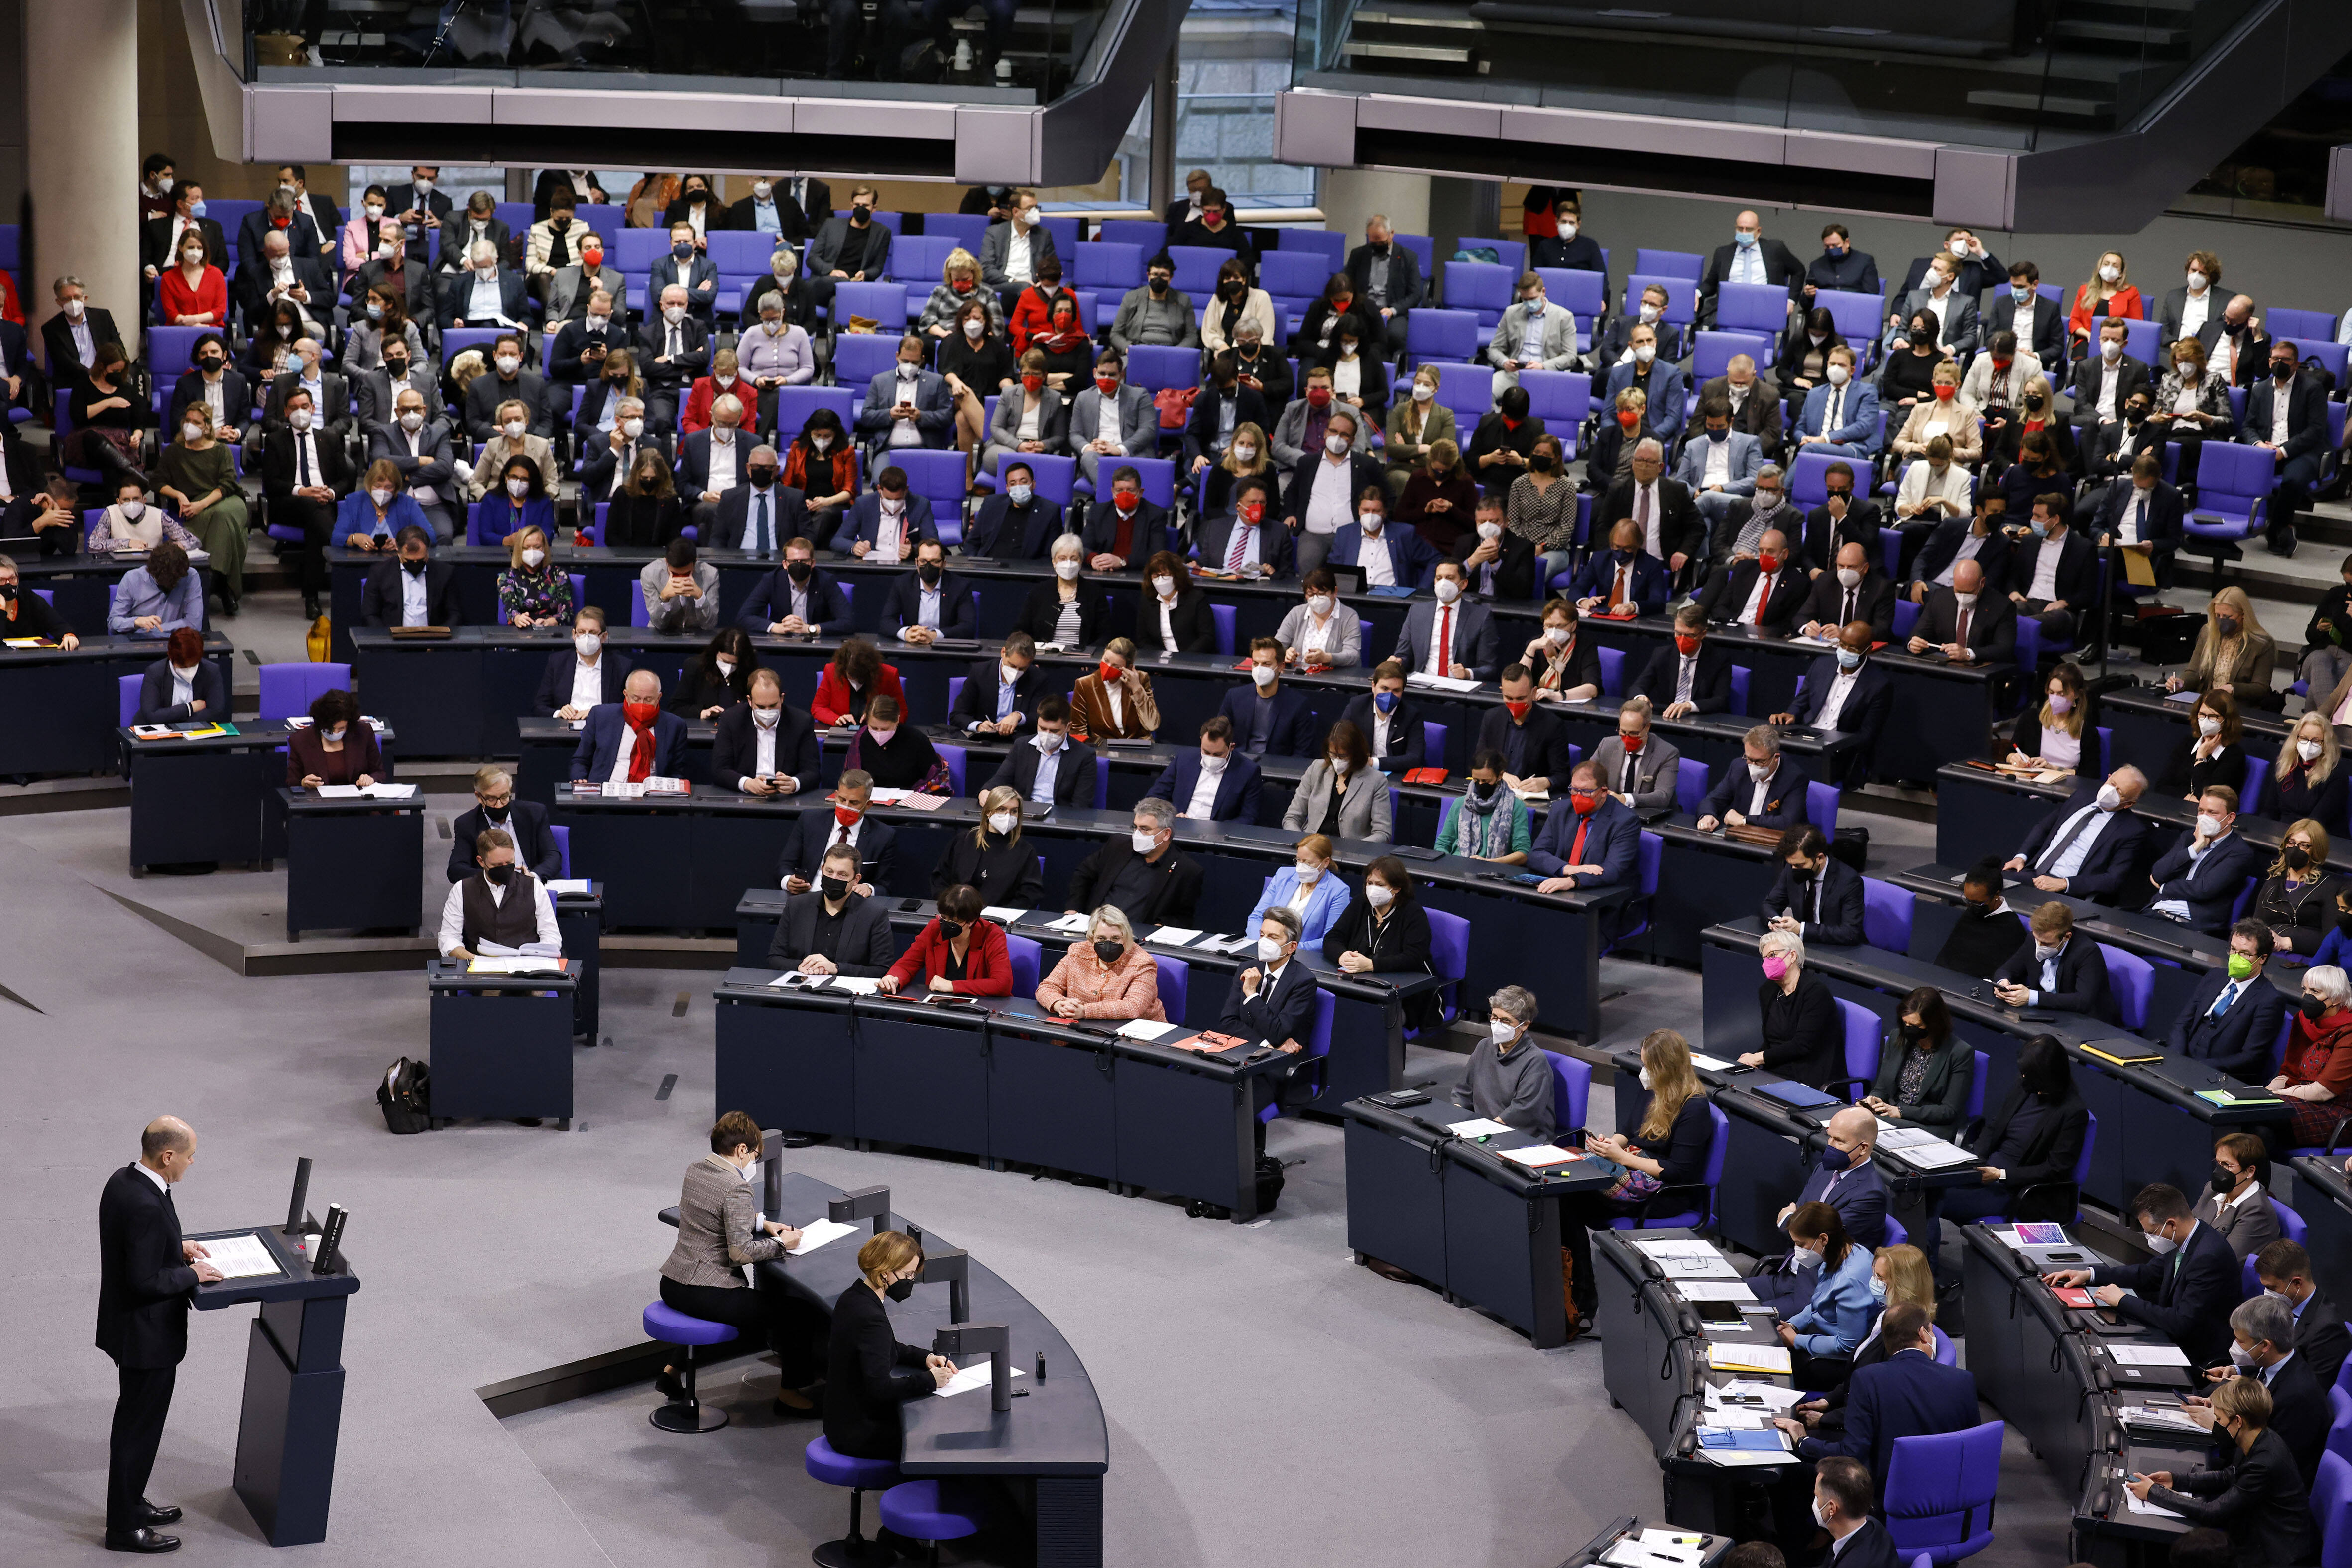 Volles Haus: 736 Mitglieder hat der Bundestag zur Zeit. Nur selten sind sie so zahlreich im Plenum wie hier am 15.12.2021 bei der ersten Regierungserklärung von Bundeskanzler Olaf Scholz.